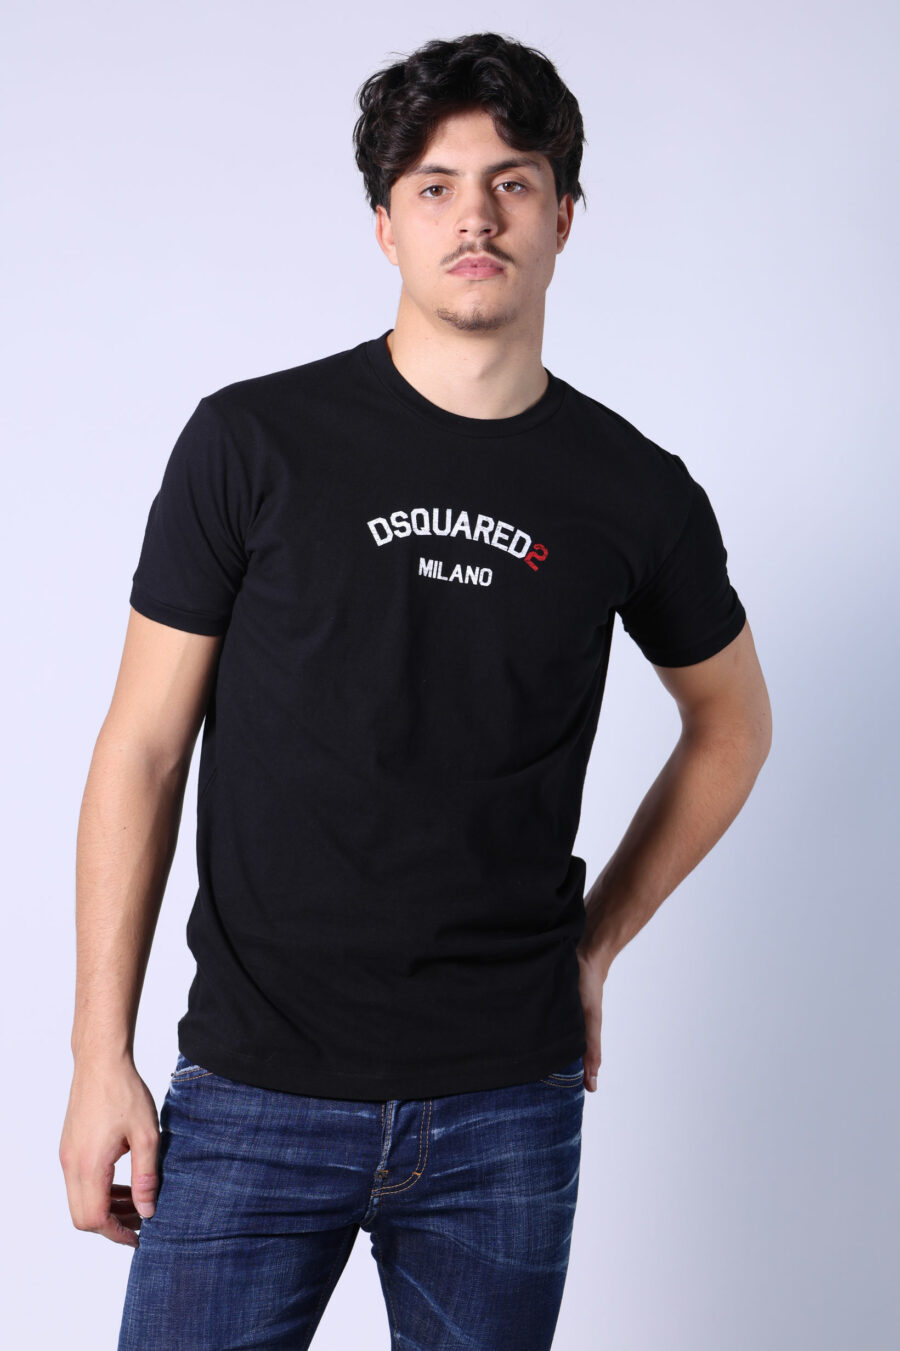 T-shirt noir avec minilogue "dsquared2 milano" - Untitled Catalog 05472